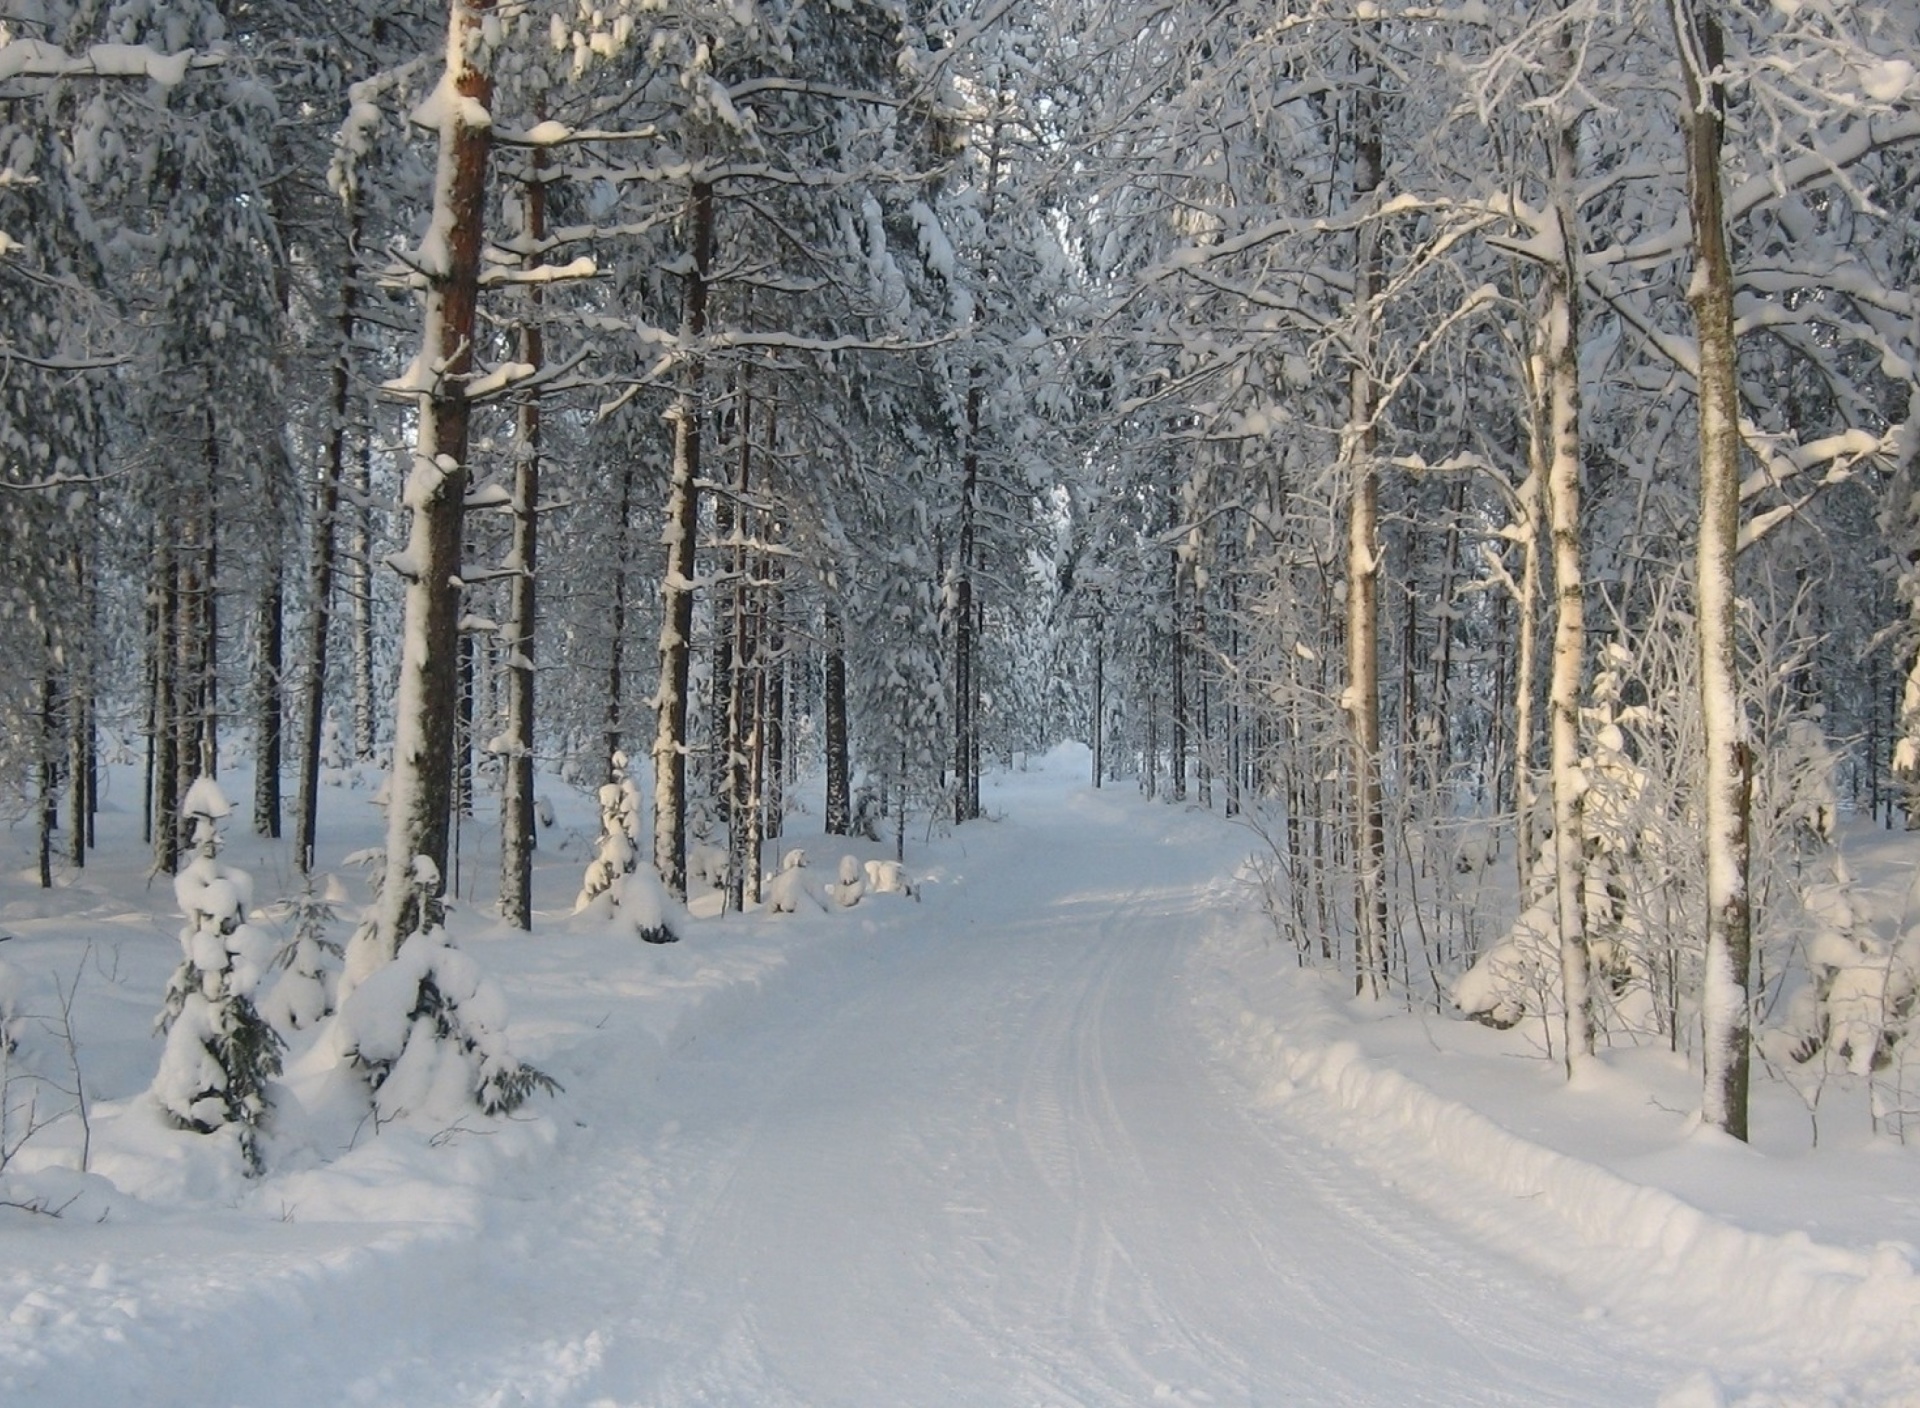 Winter snowy forest screenshot #1 1920x1408